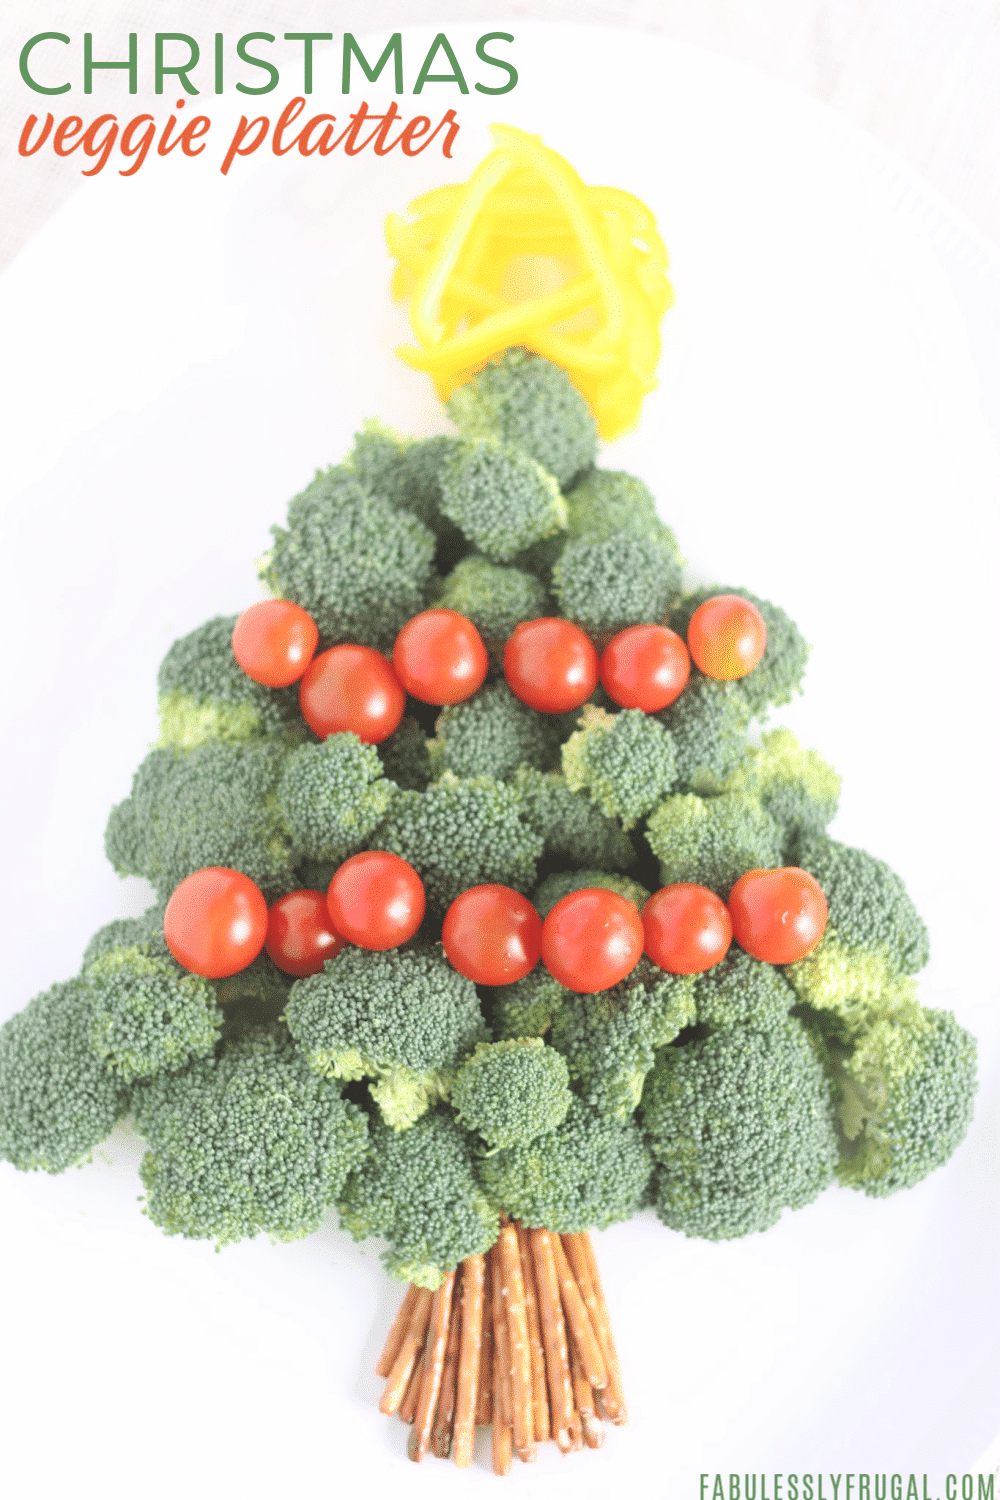 Veggie Christmas tree